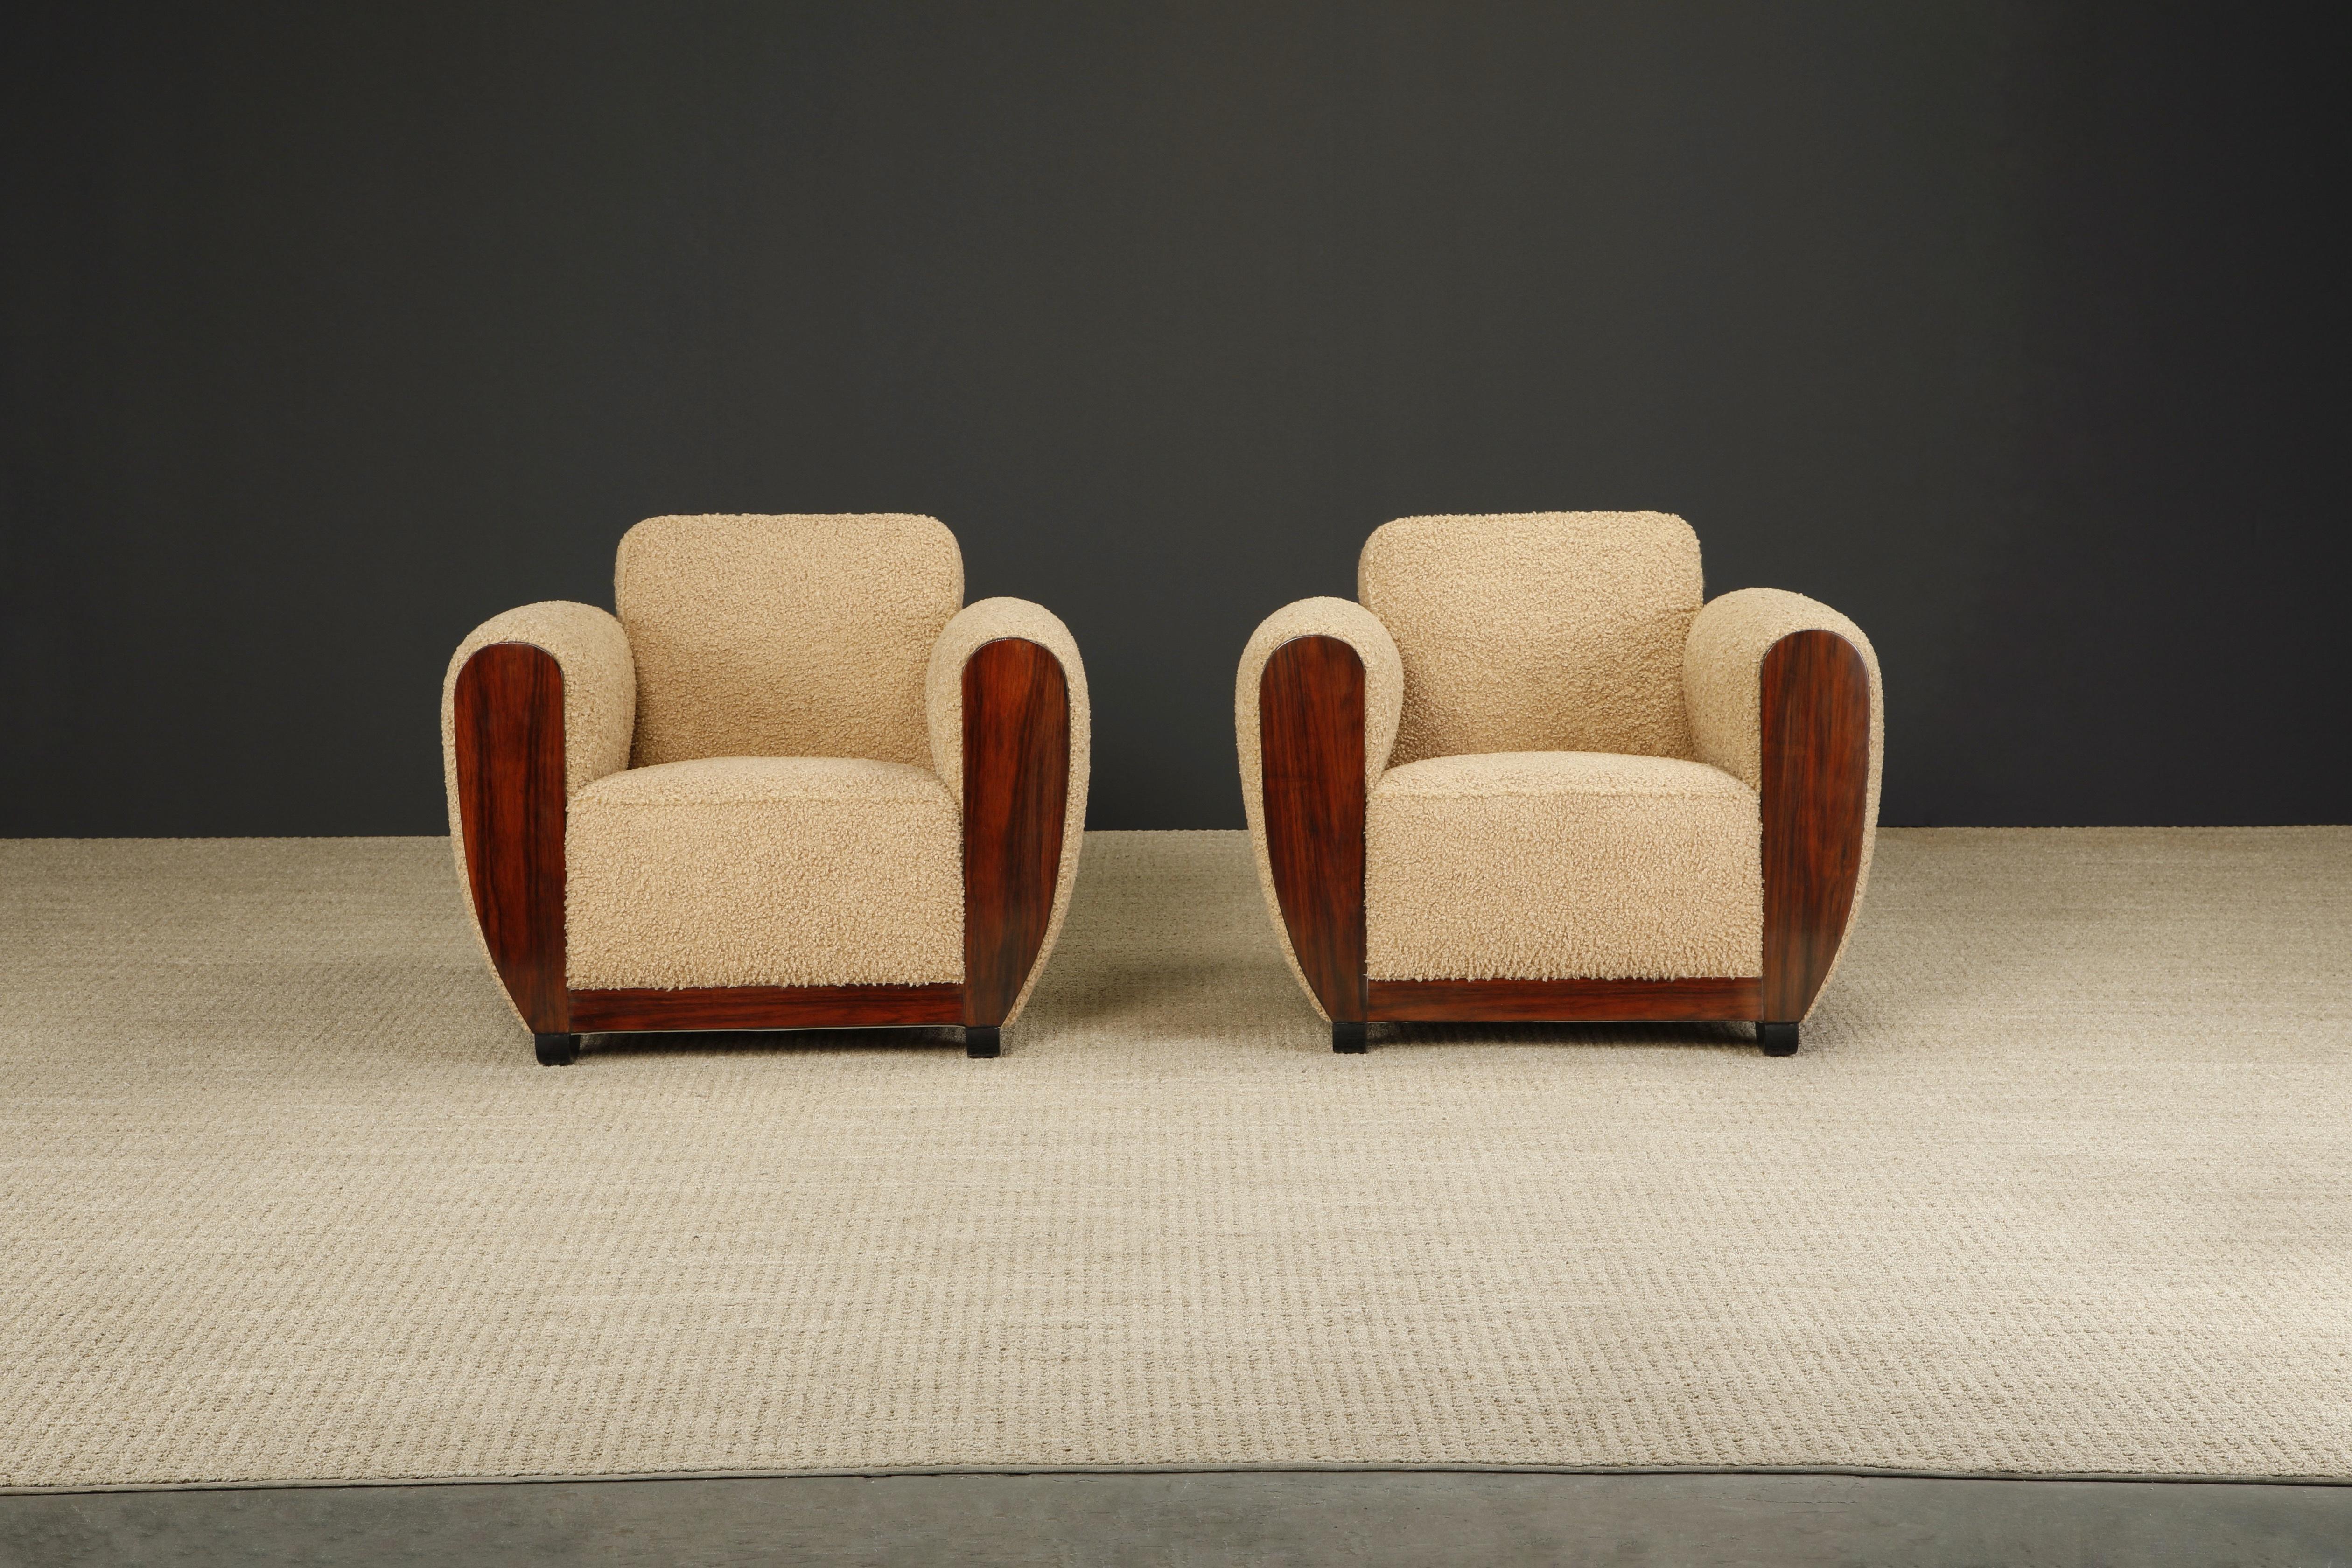 Cette paire de fauteuils club Art déco en bois de rose, datant des années 1930, a été entièrement restaurée et recouverte d'un nouveau tissu bouclé en forme d'ourson. Les accoudoirs en bois de rose ont été polis à la française, ce qui a permis